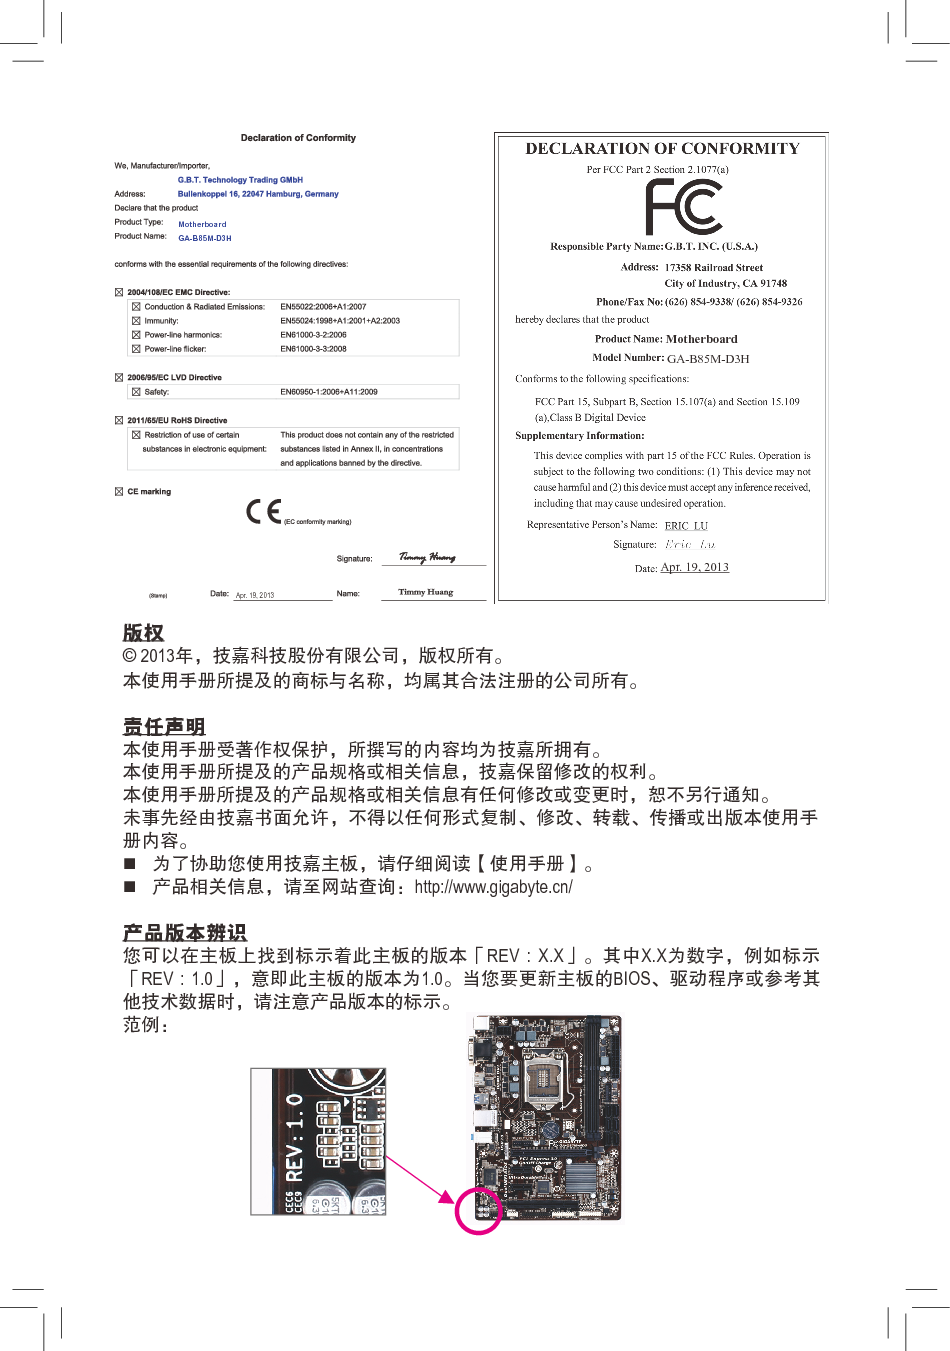 技嘉 Gigabyte GA-B85M-D3H 使用手册 第1页